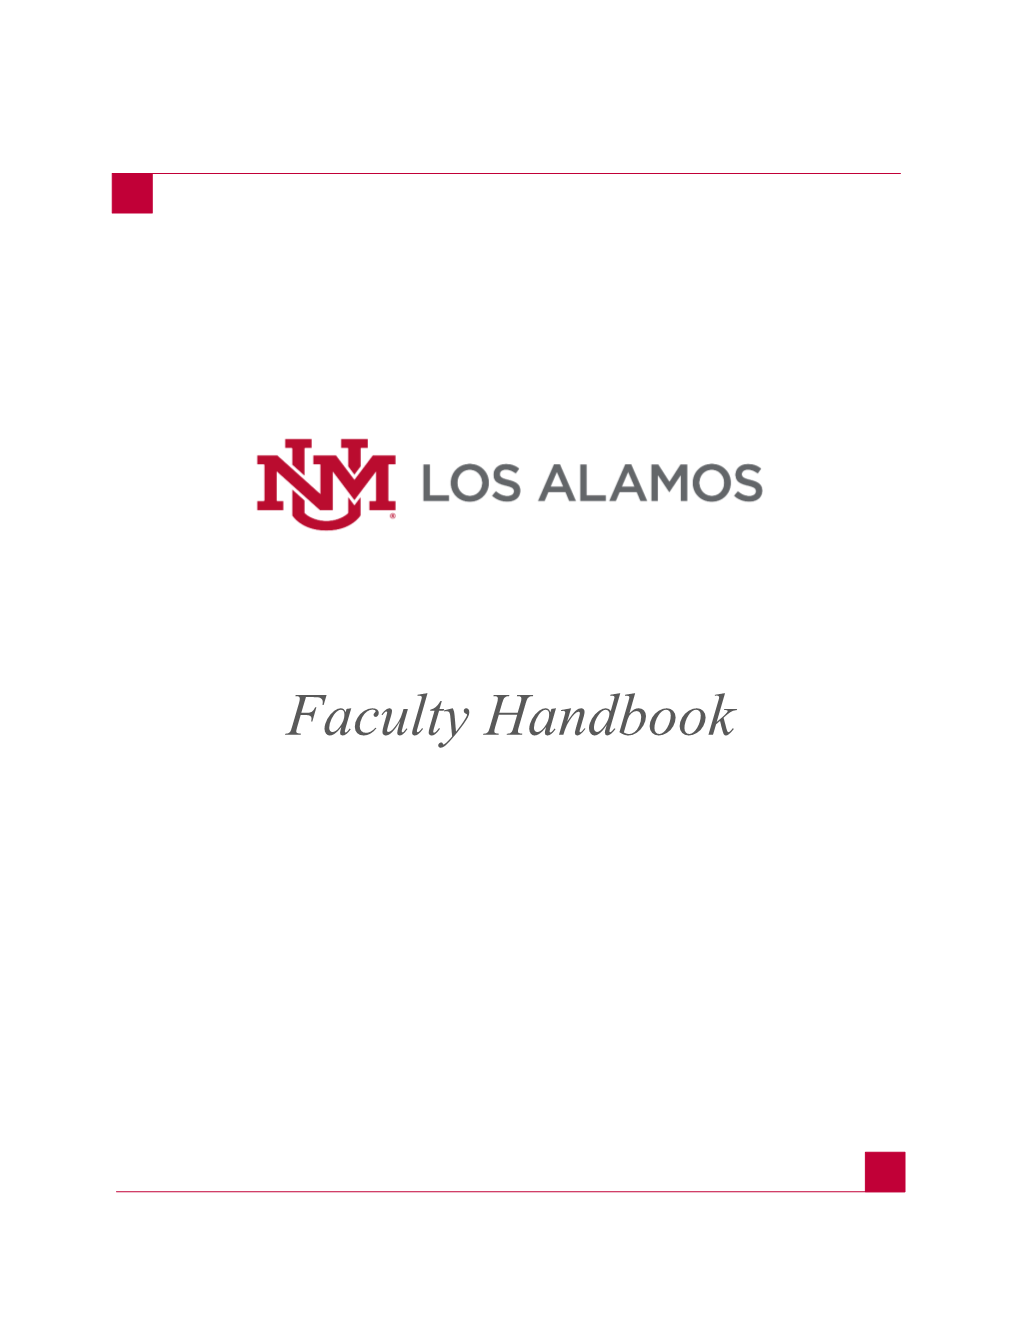 UNM-Los Alamos Faculty Handbook Table of Contents